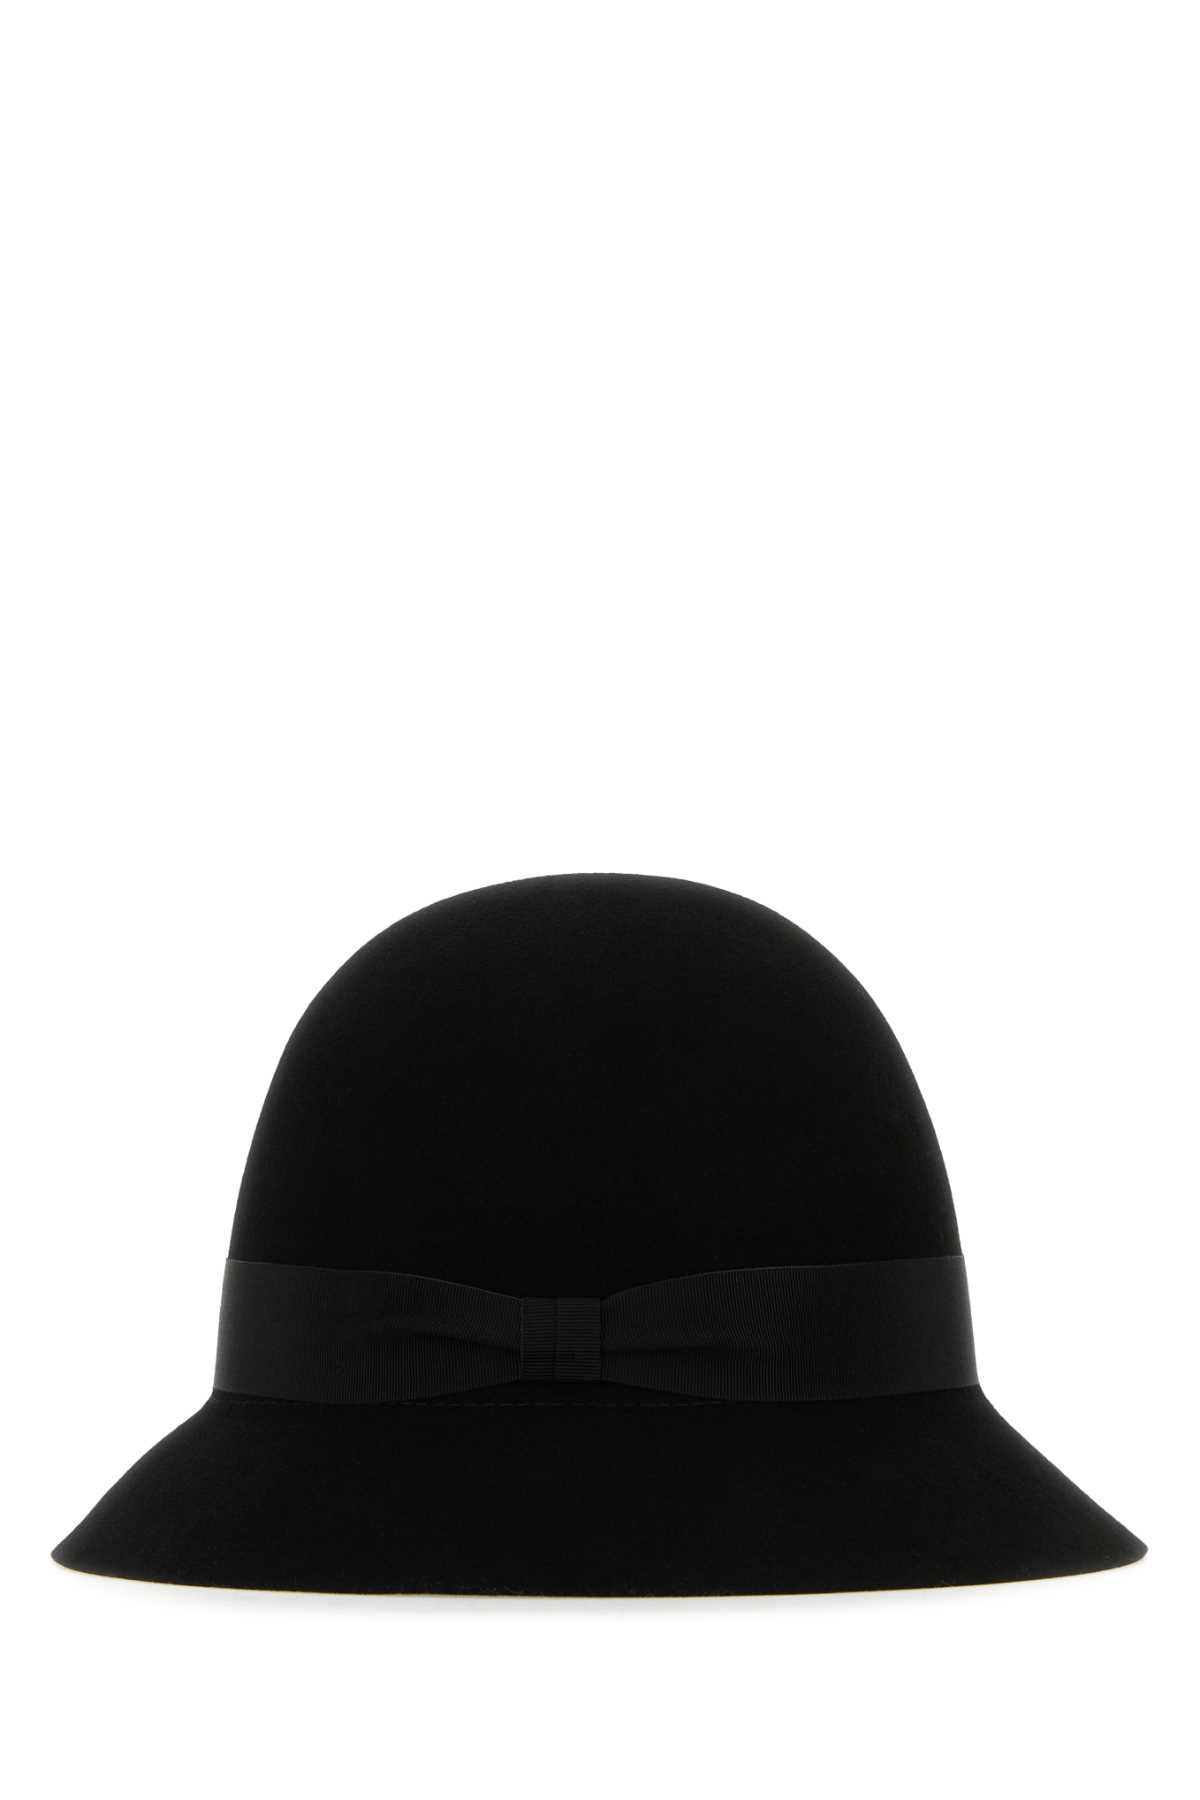 Helen Kaminski Black Felt Ella Conscious Bucket Hat In Blackblack